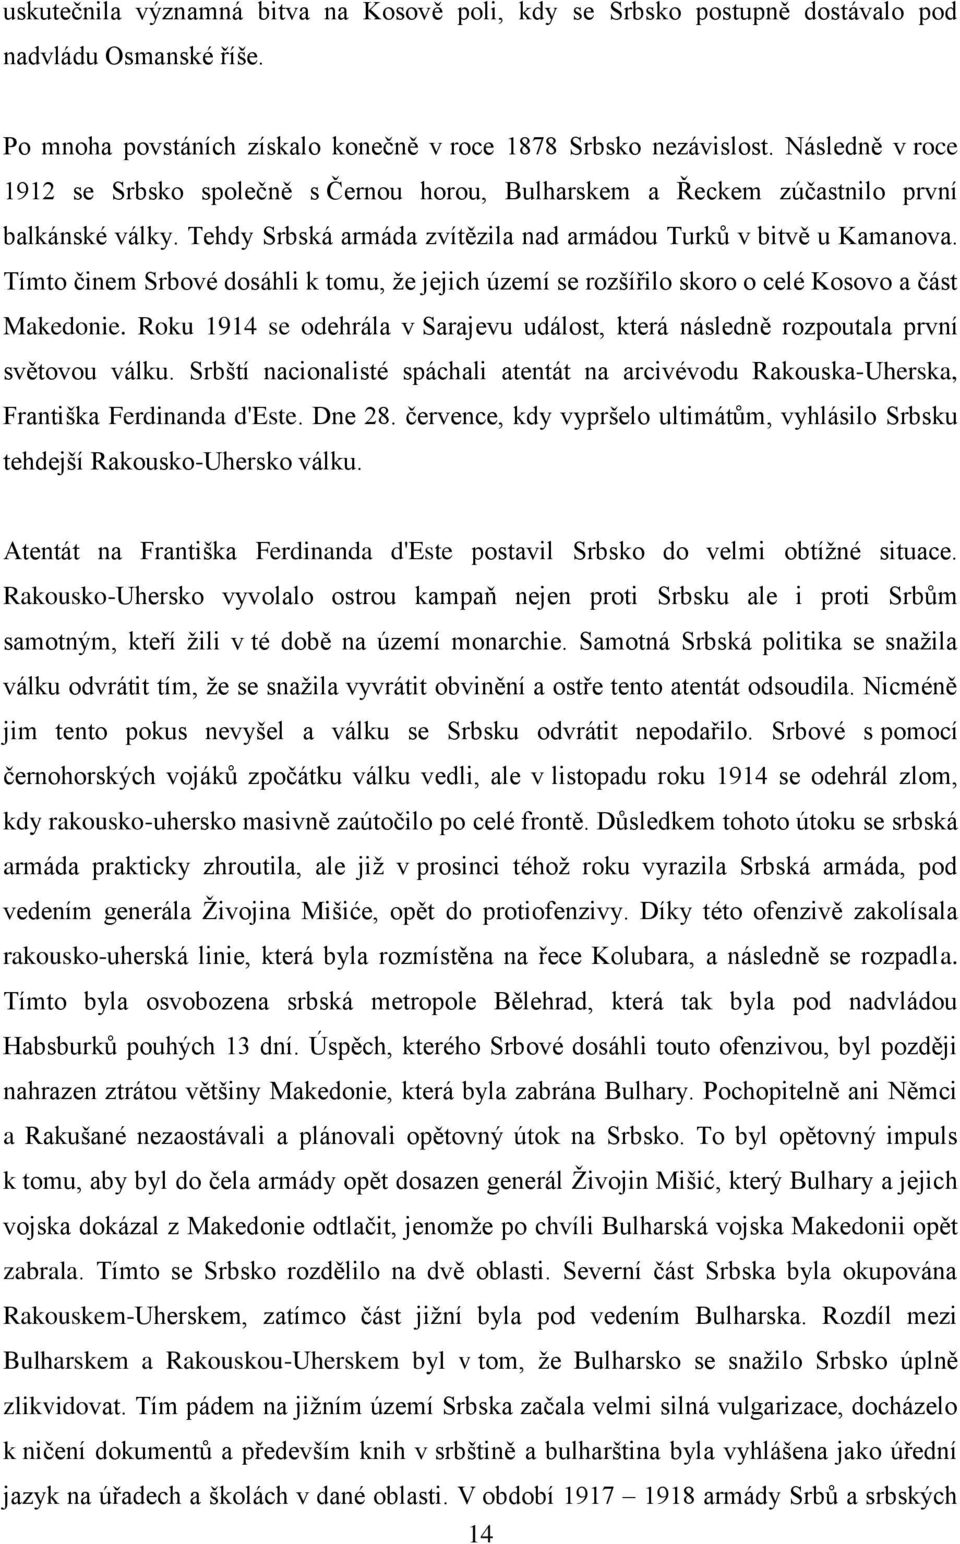 Tímto ĉinem Srbové dosáhli k tomu, ţe jejich území se rozšířilo skoro o celé Kosovo a ĉást Makedonie. Roku 1914 se odehrála v Sarajevu událost, která následně rozpoutala první světovou válku.